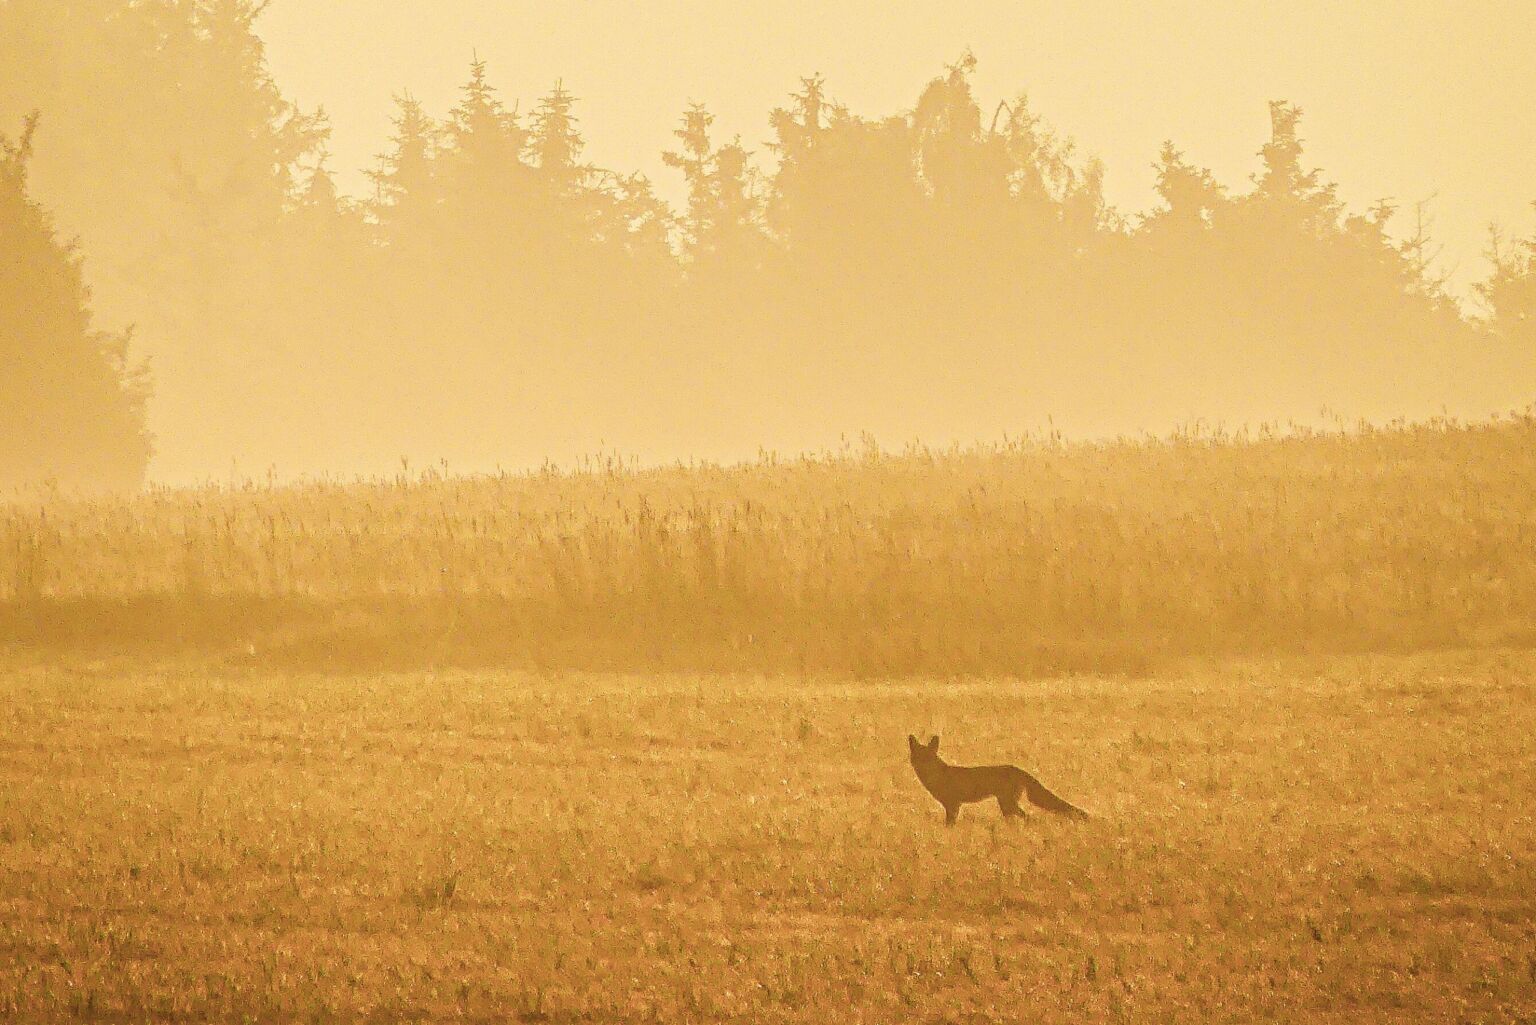 Fuchs am Morgen im Osterzgebirge